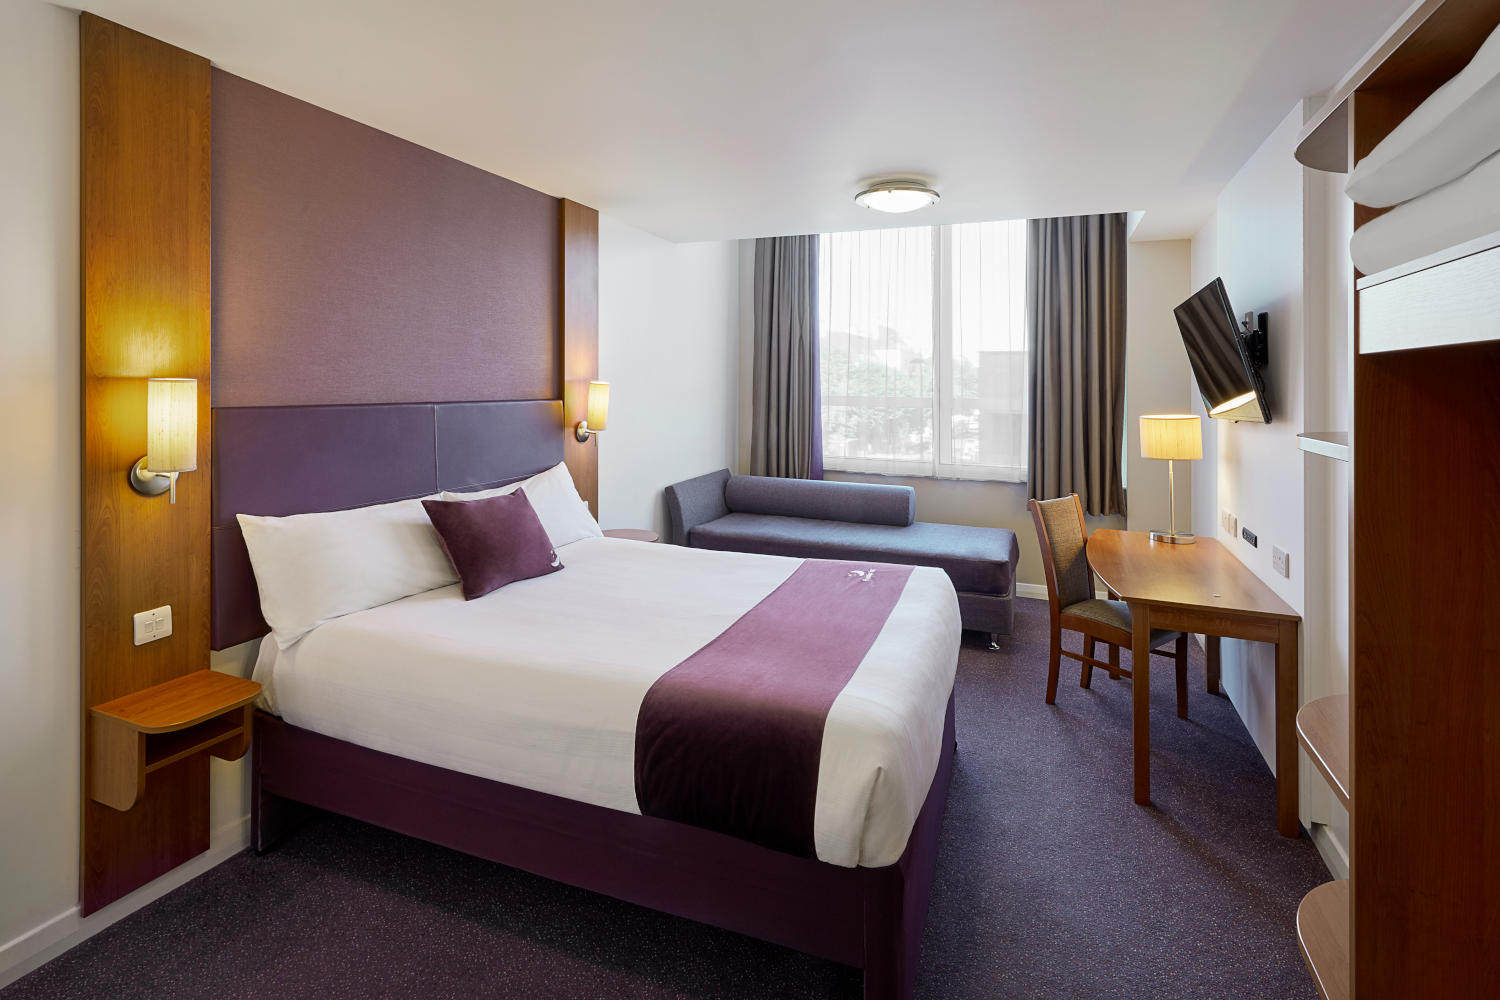 Premier Inn bedroom Premier Inn Corby hotel Kettering 03337 774625